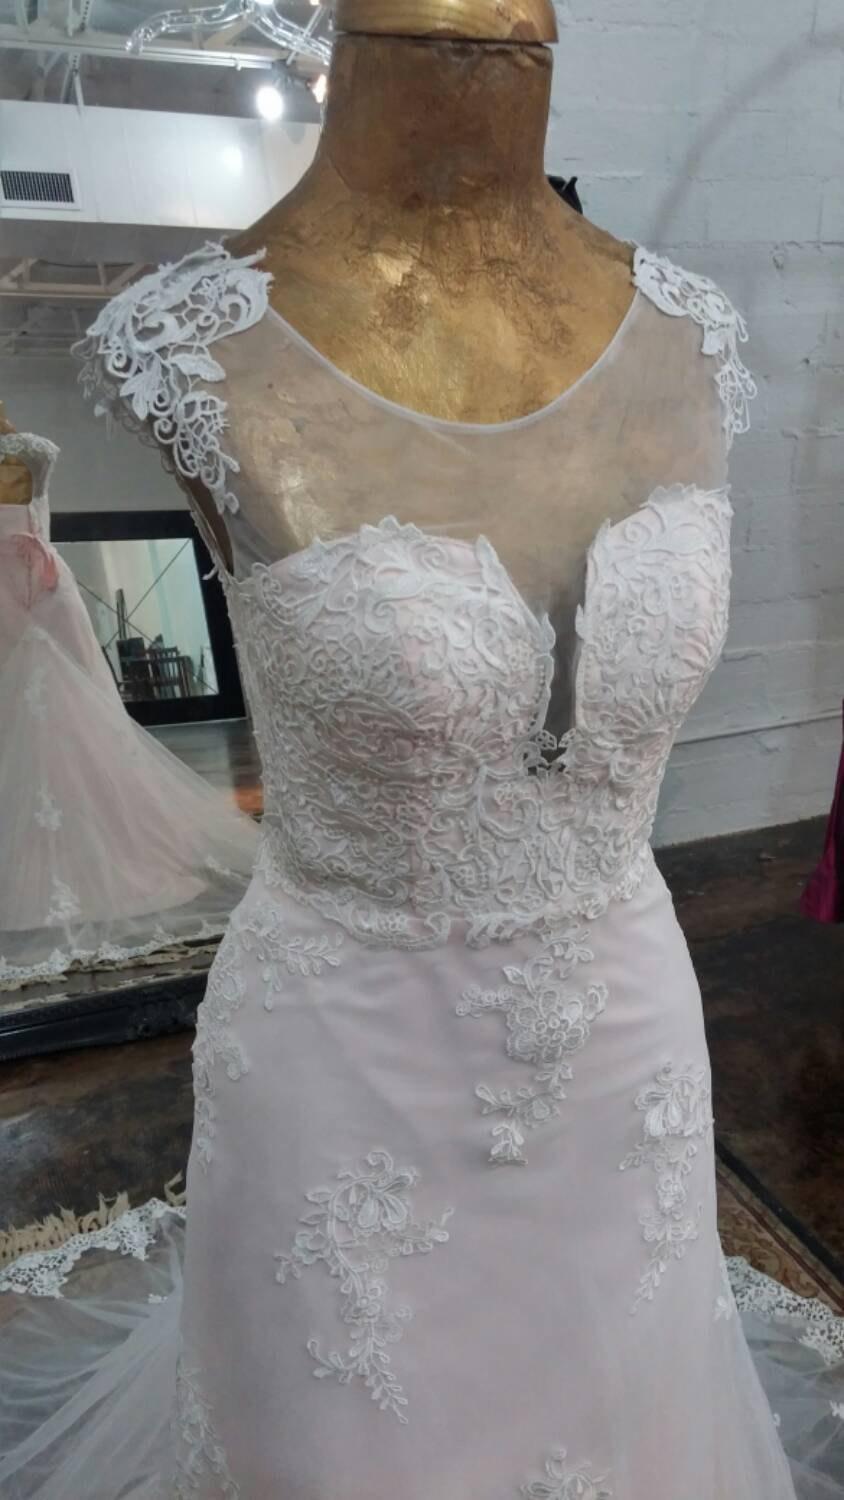 Wedding - Blush and Light Ivory Lace Wedding Dress, Lace Wedding Dress, Blush Wedding Dress, Lace Applique Wedding Dress, Unique Wedding Dress